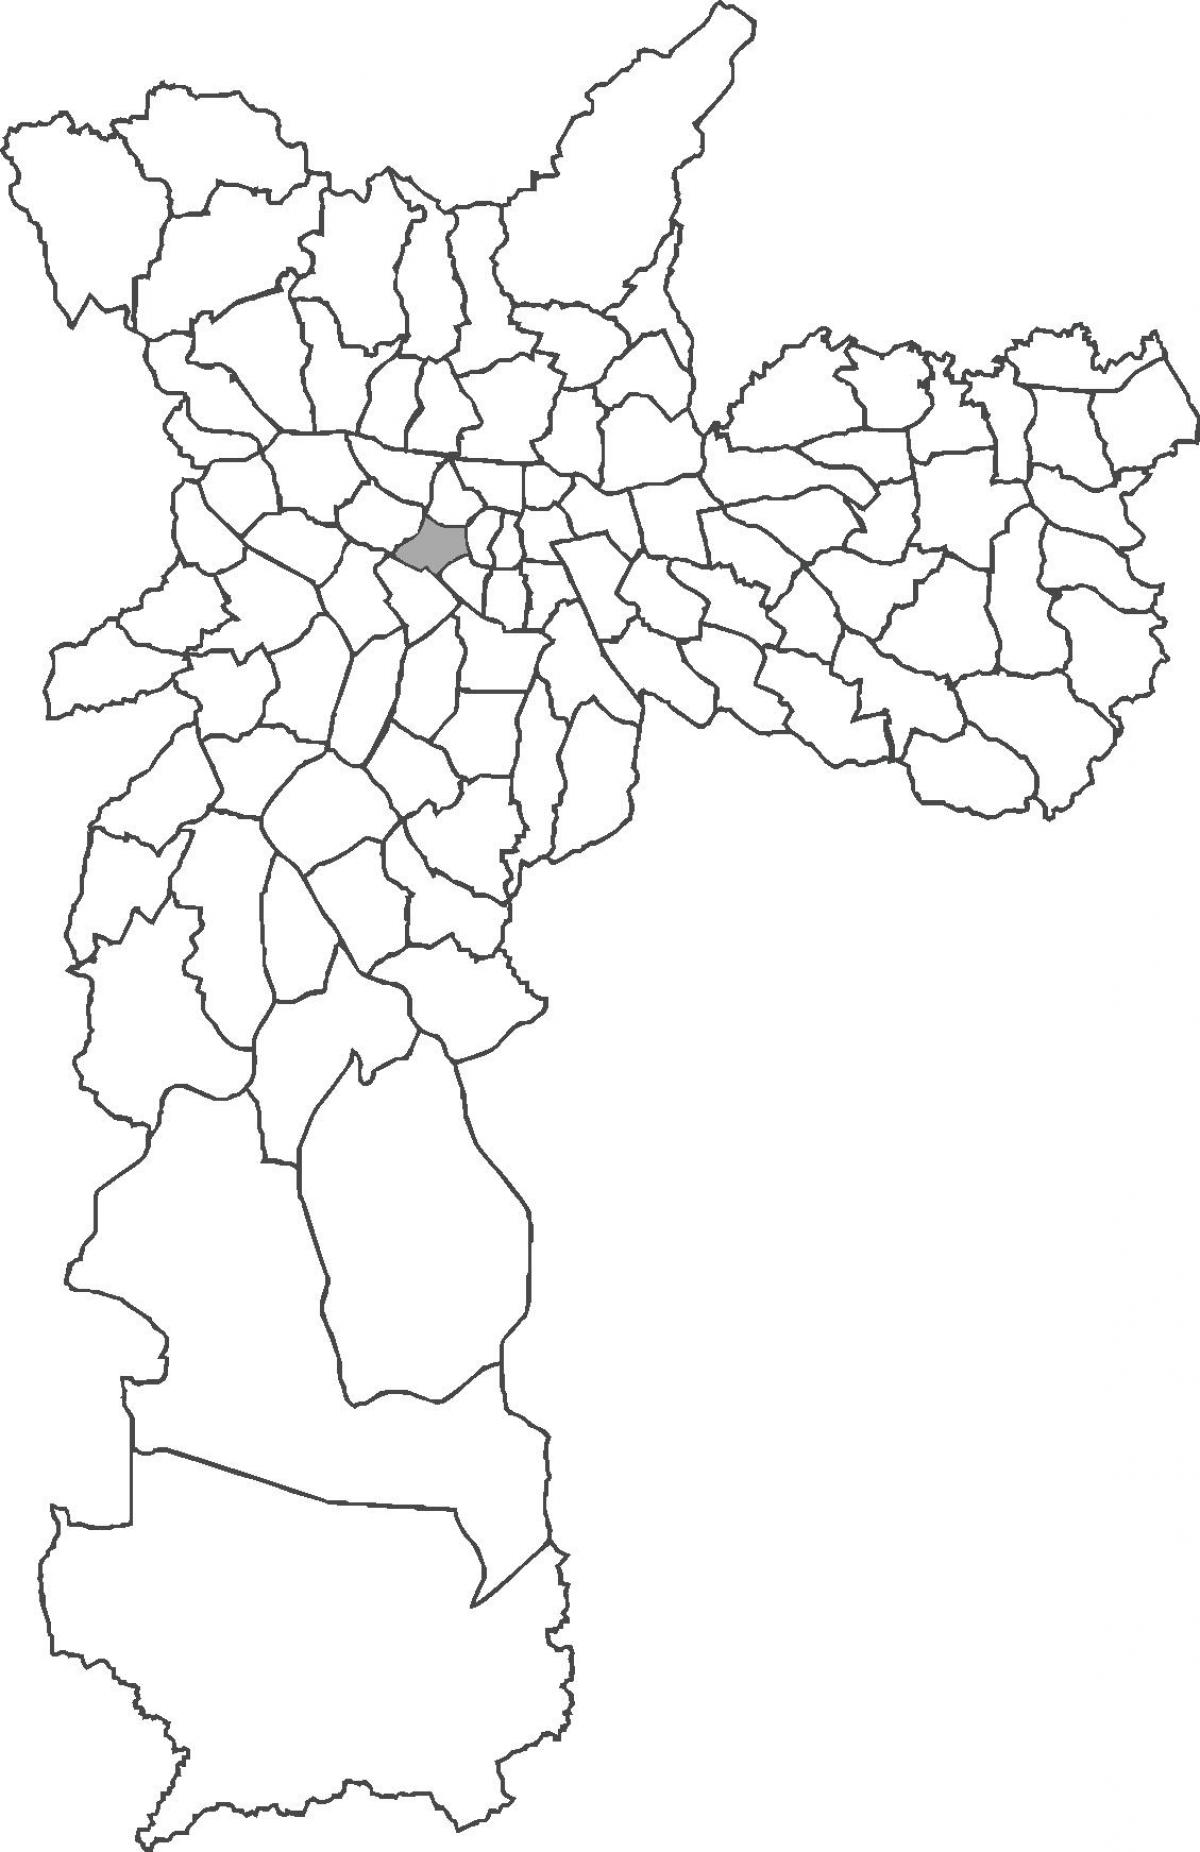 Map of Consolação district